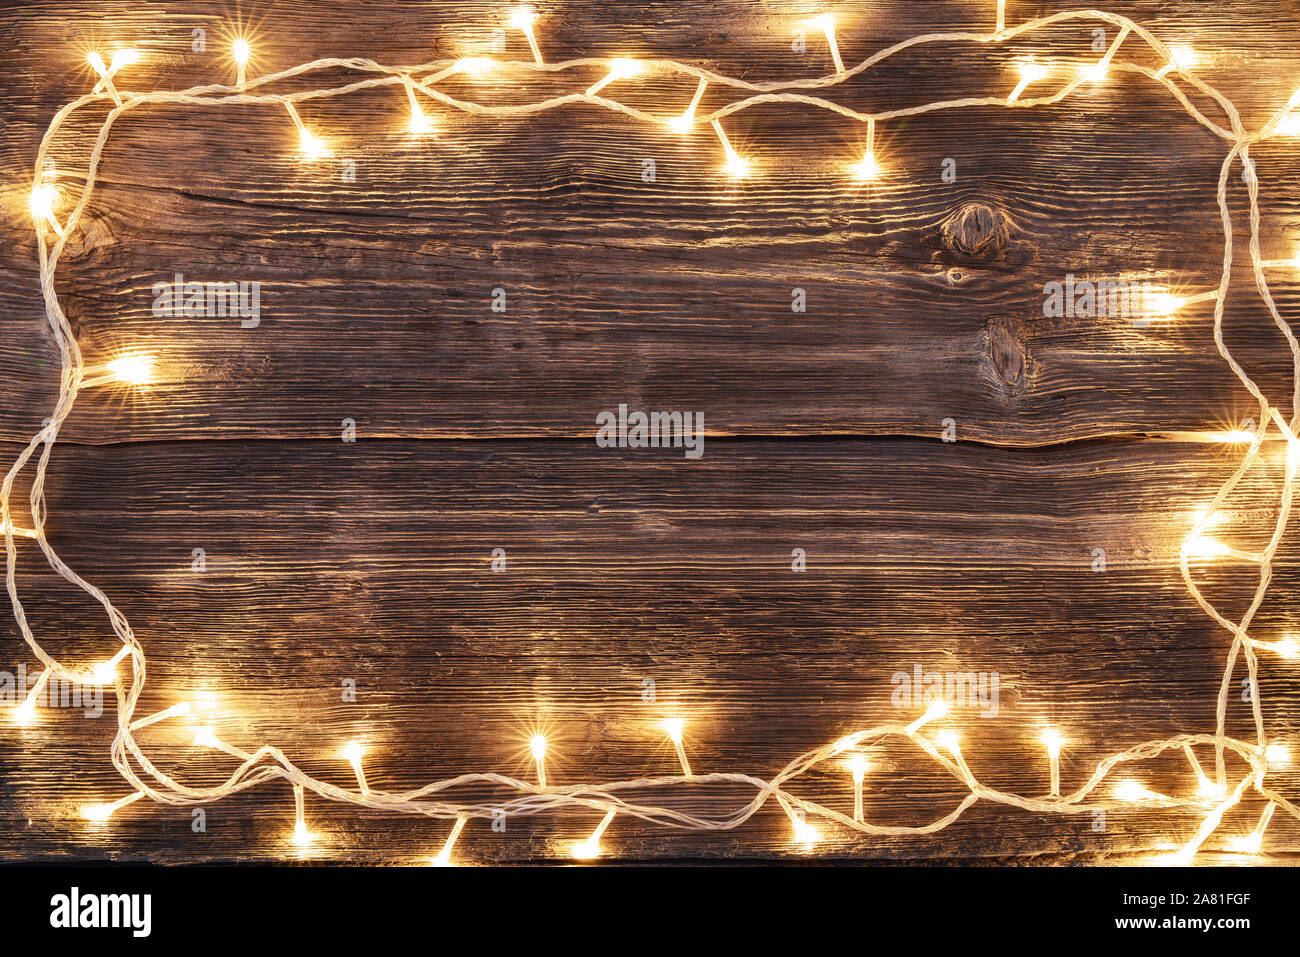 Weihnachtsbaum Holz- Hintergrund mit LED-Leuchten Grenze Stockfoto